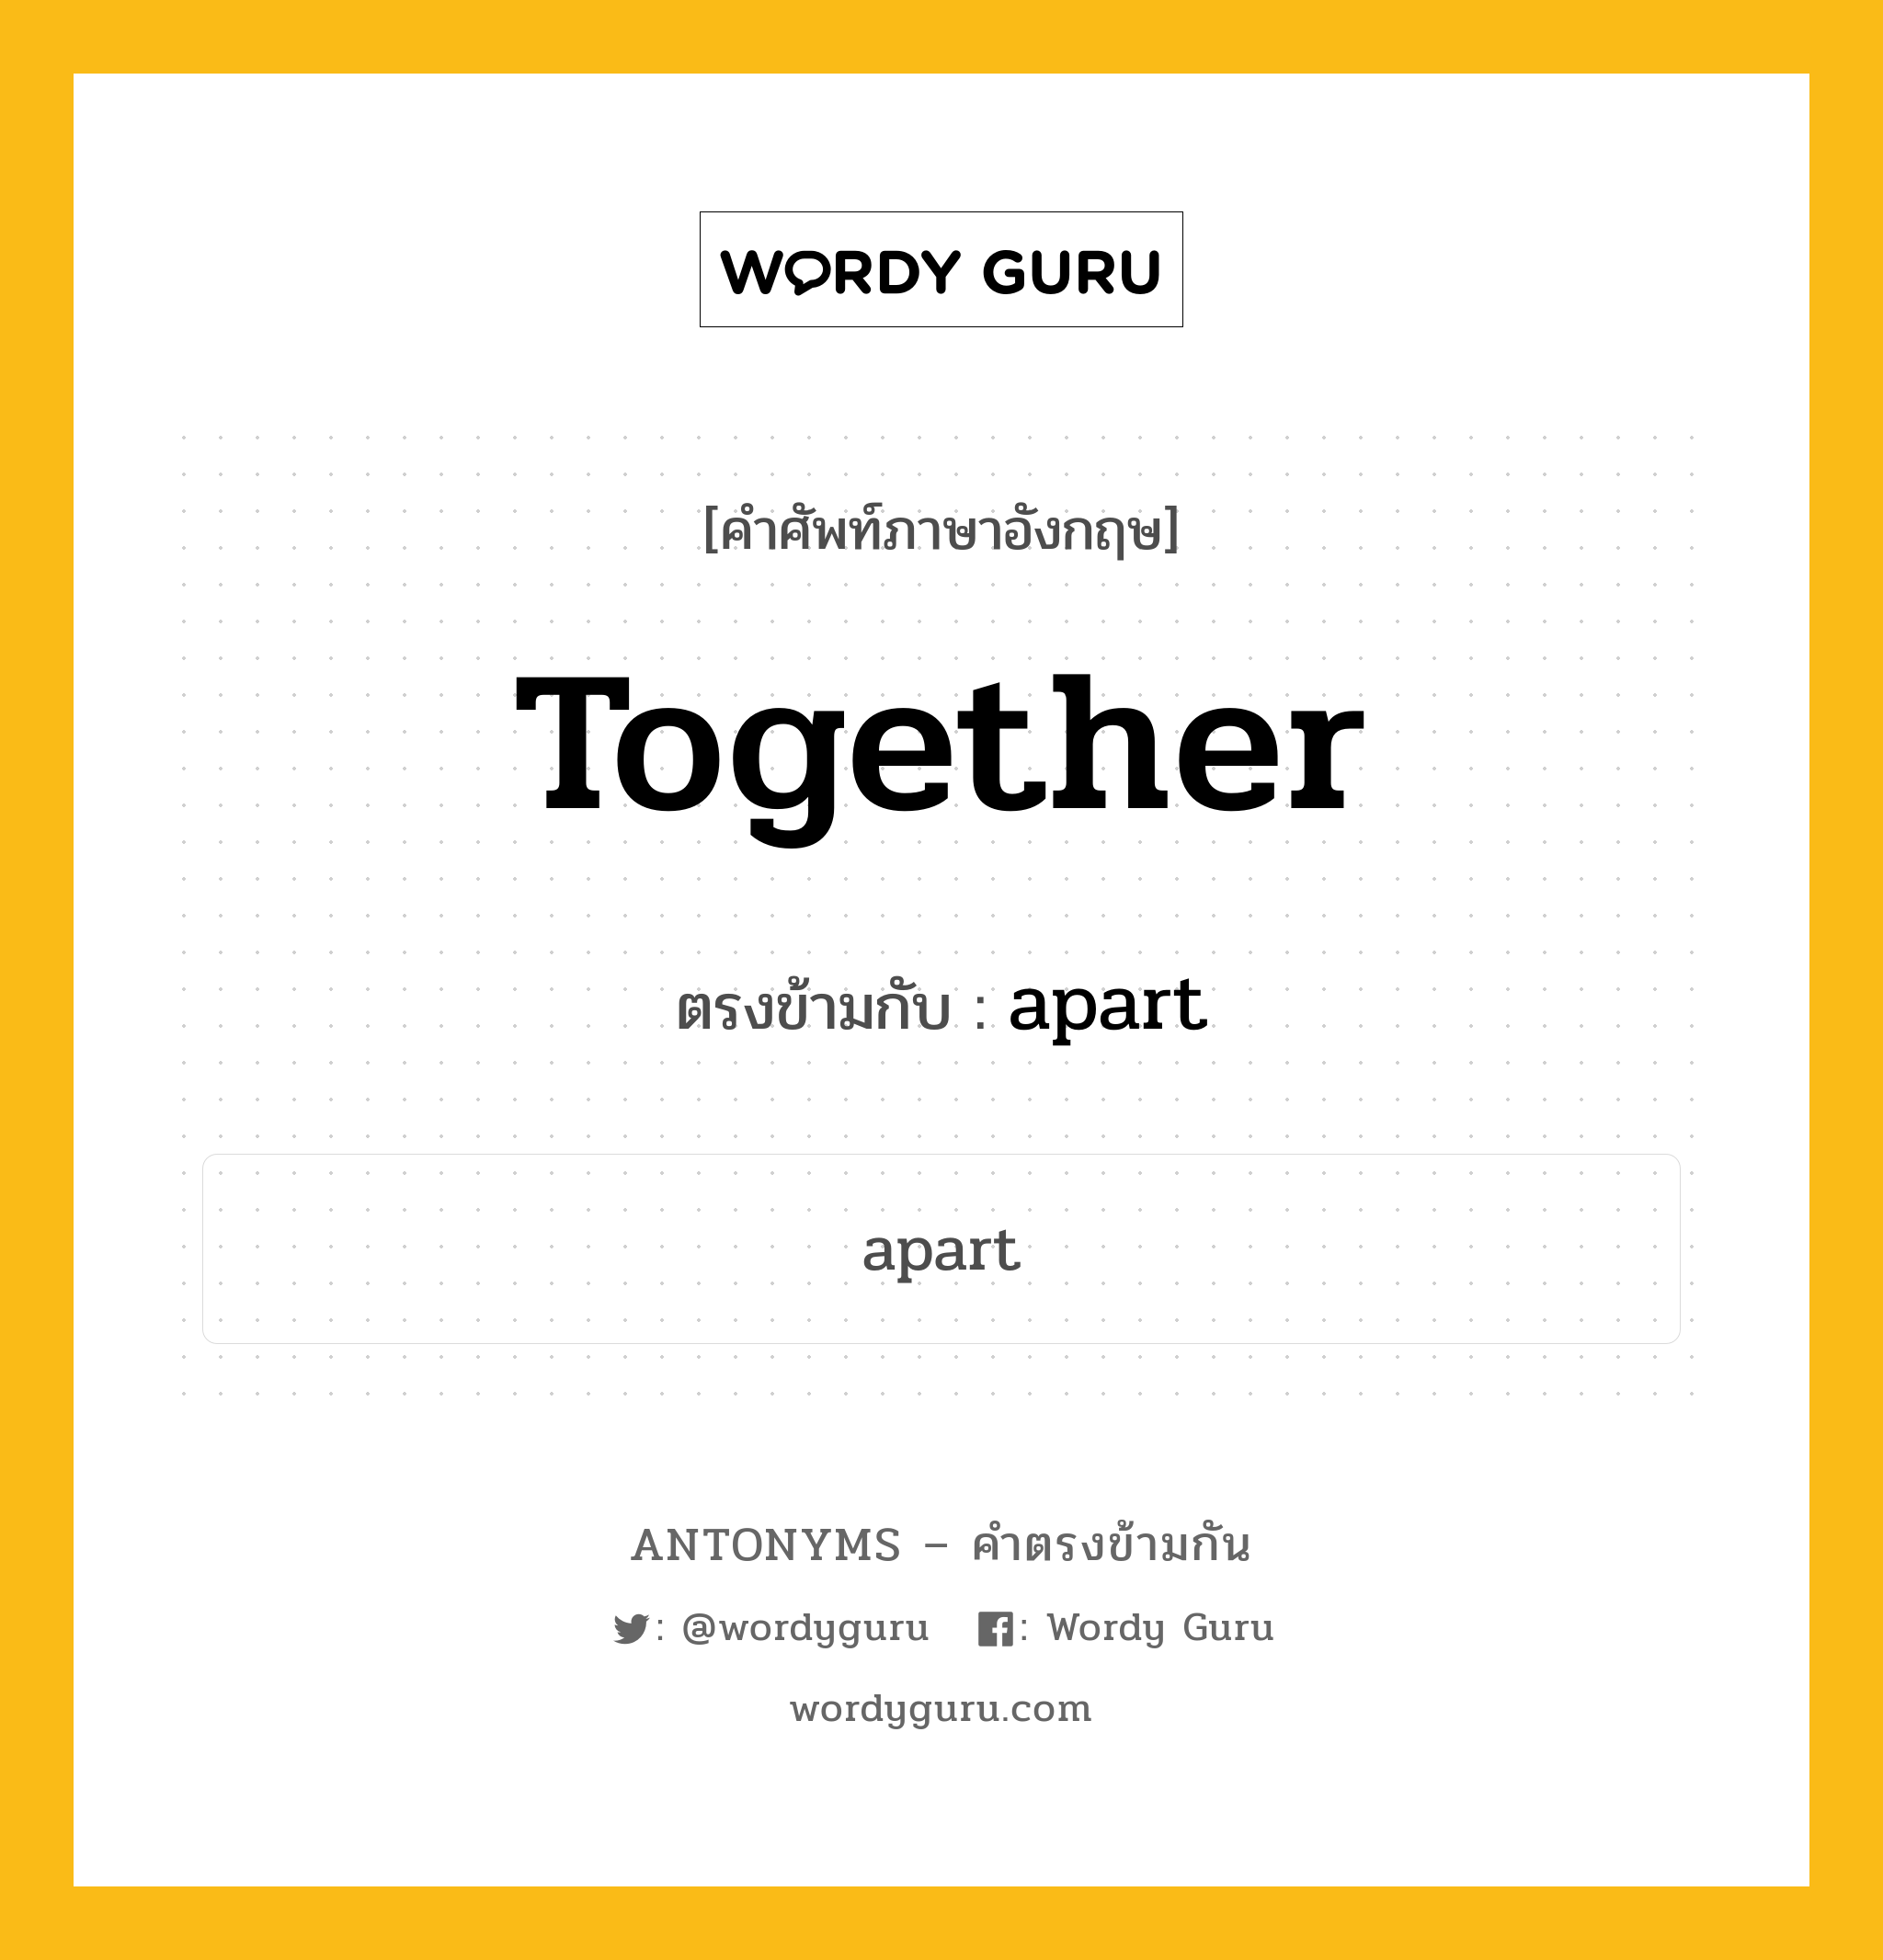 together เป็นคำตรงข้ามกับคำไหนบ้าง?, คำศัพท์ภาษาอังกฤษ together ตรงข้ามกับ apart หมวด apart